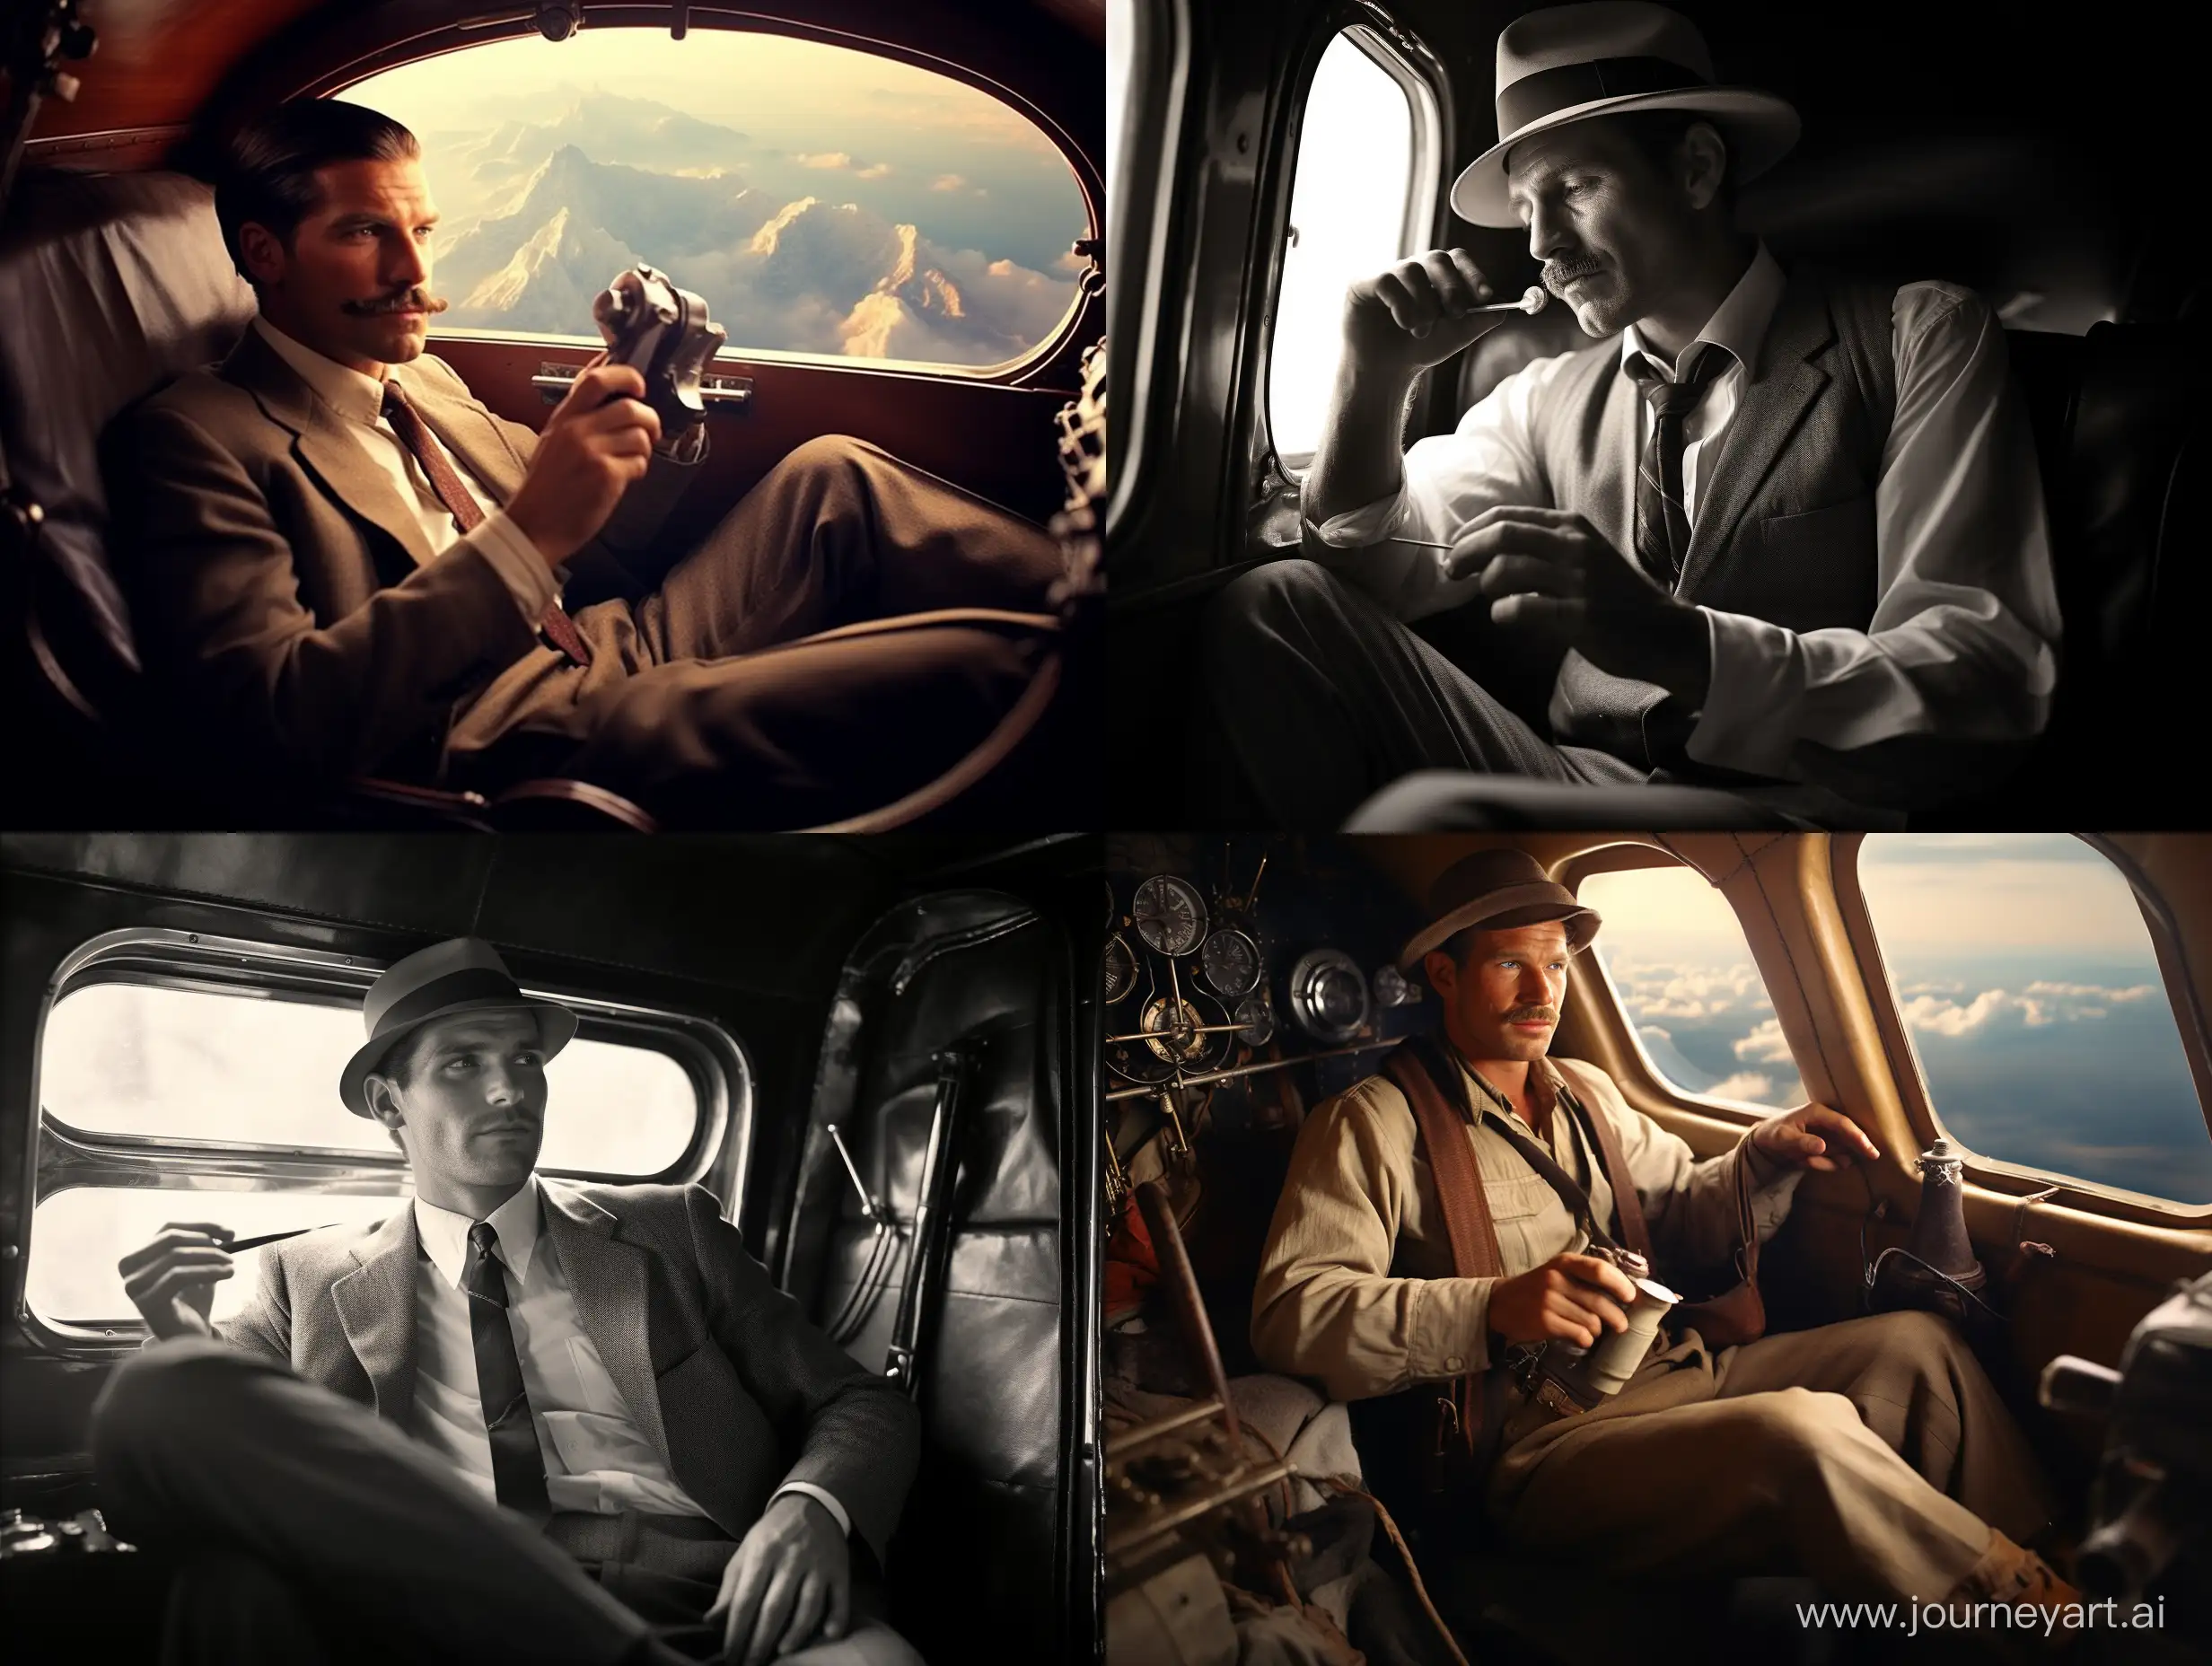 Vintage-Indiana-Jones-Smoking-Briar-Wood-Pipe-in-1940s-Plane